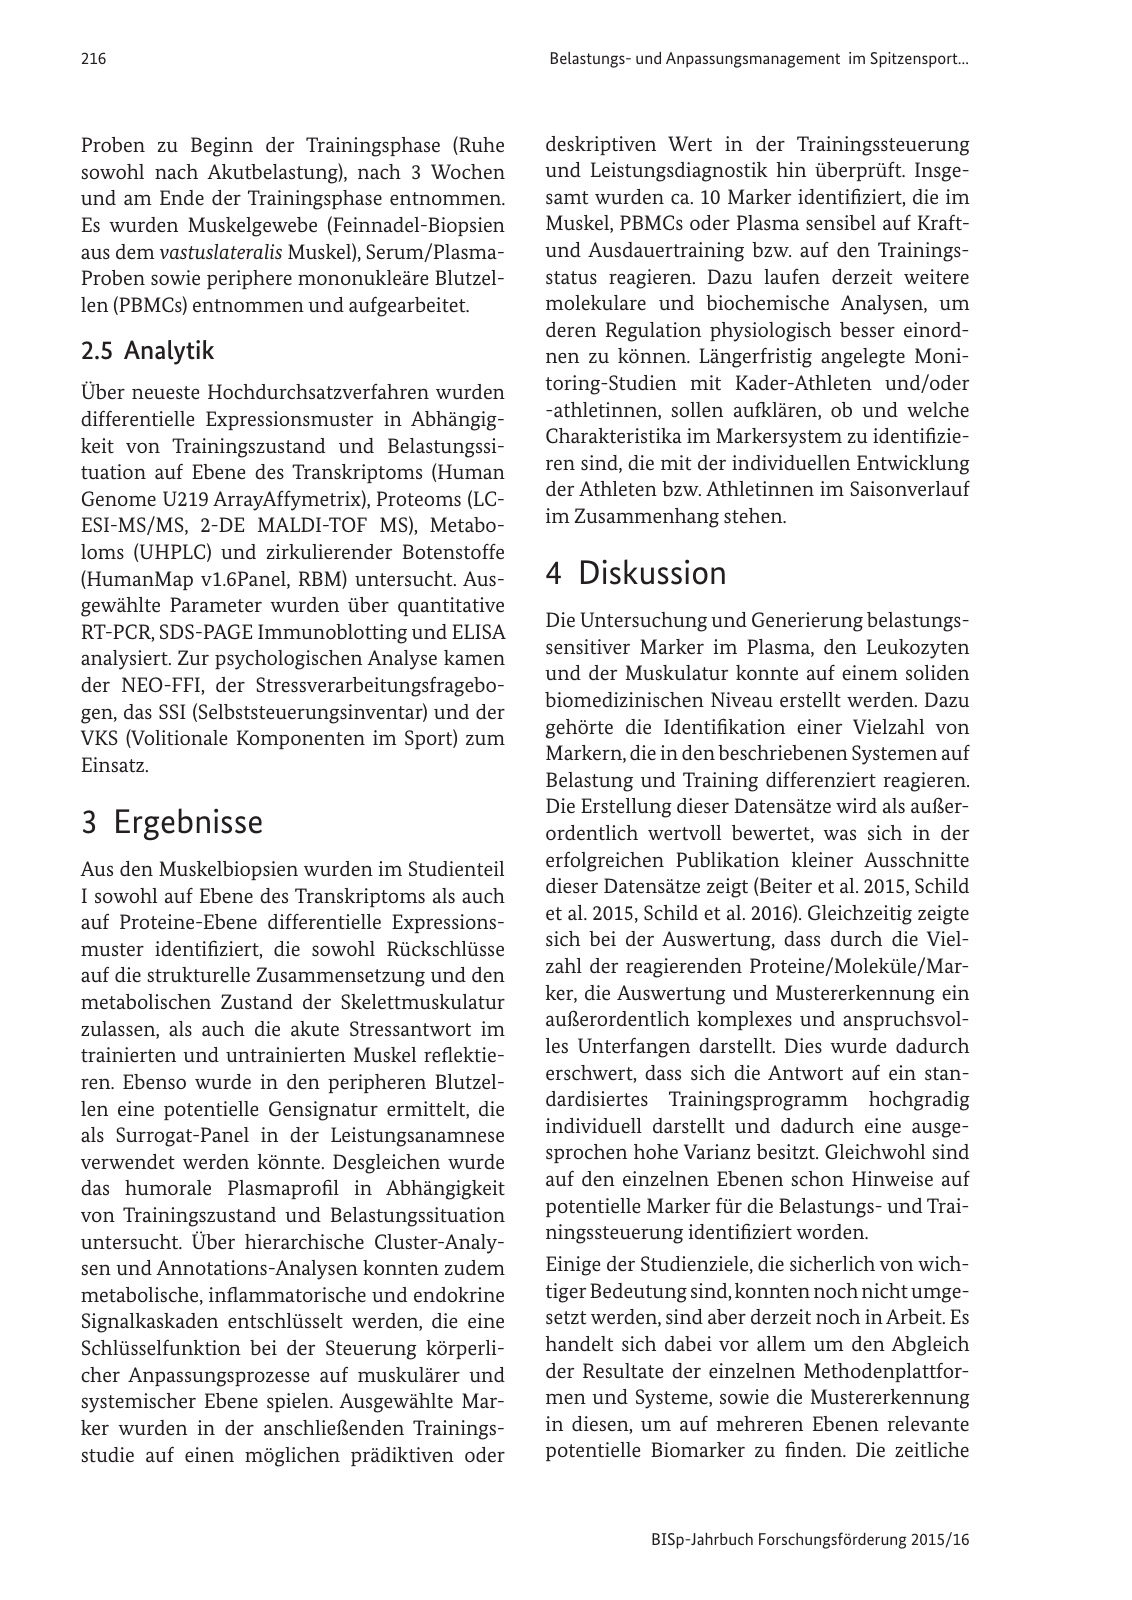 Vorschau BISp-Jahrbuch Forschungsförderung 2015/16 Seite 218